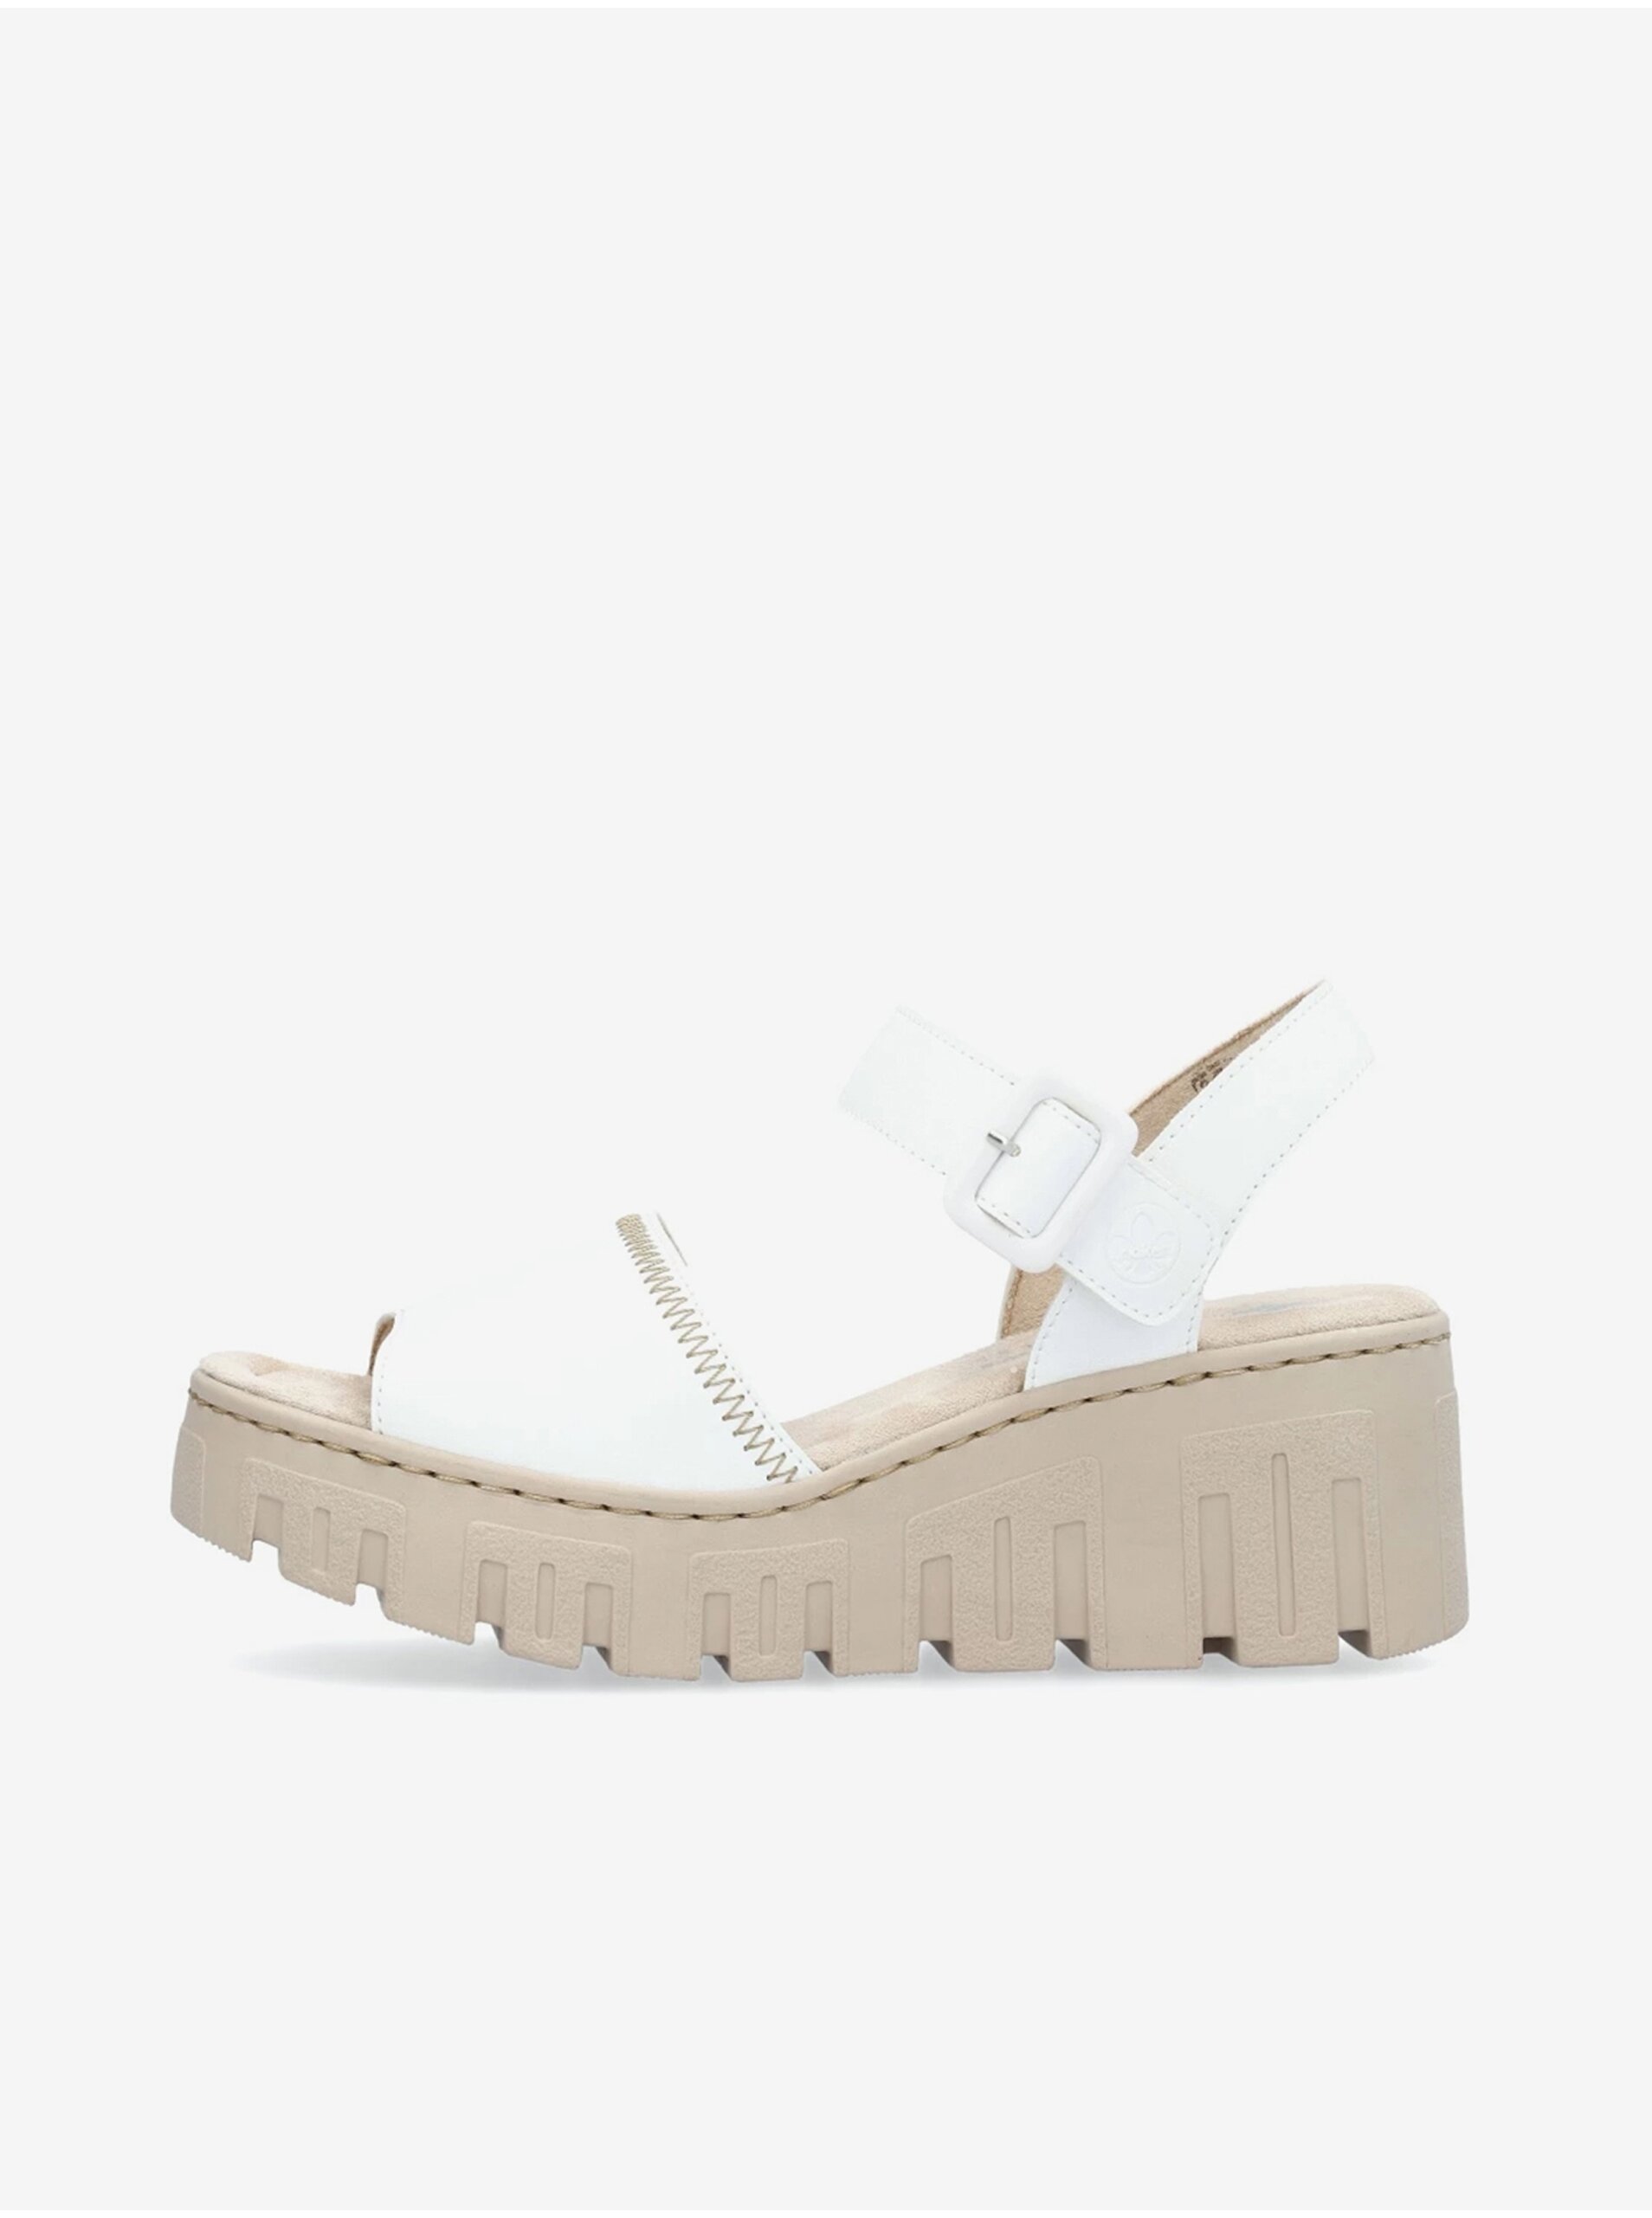 E-shop Bílé dámské sandálky na klínku Rieker